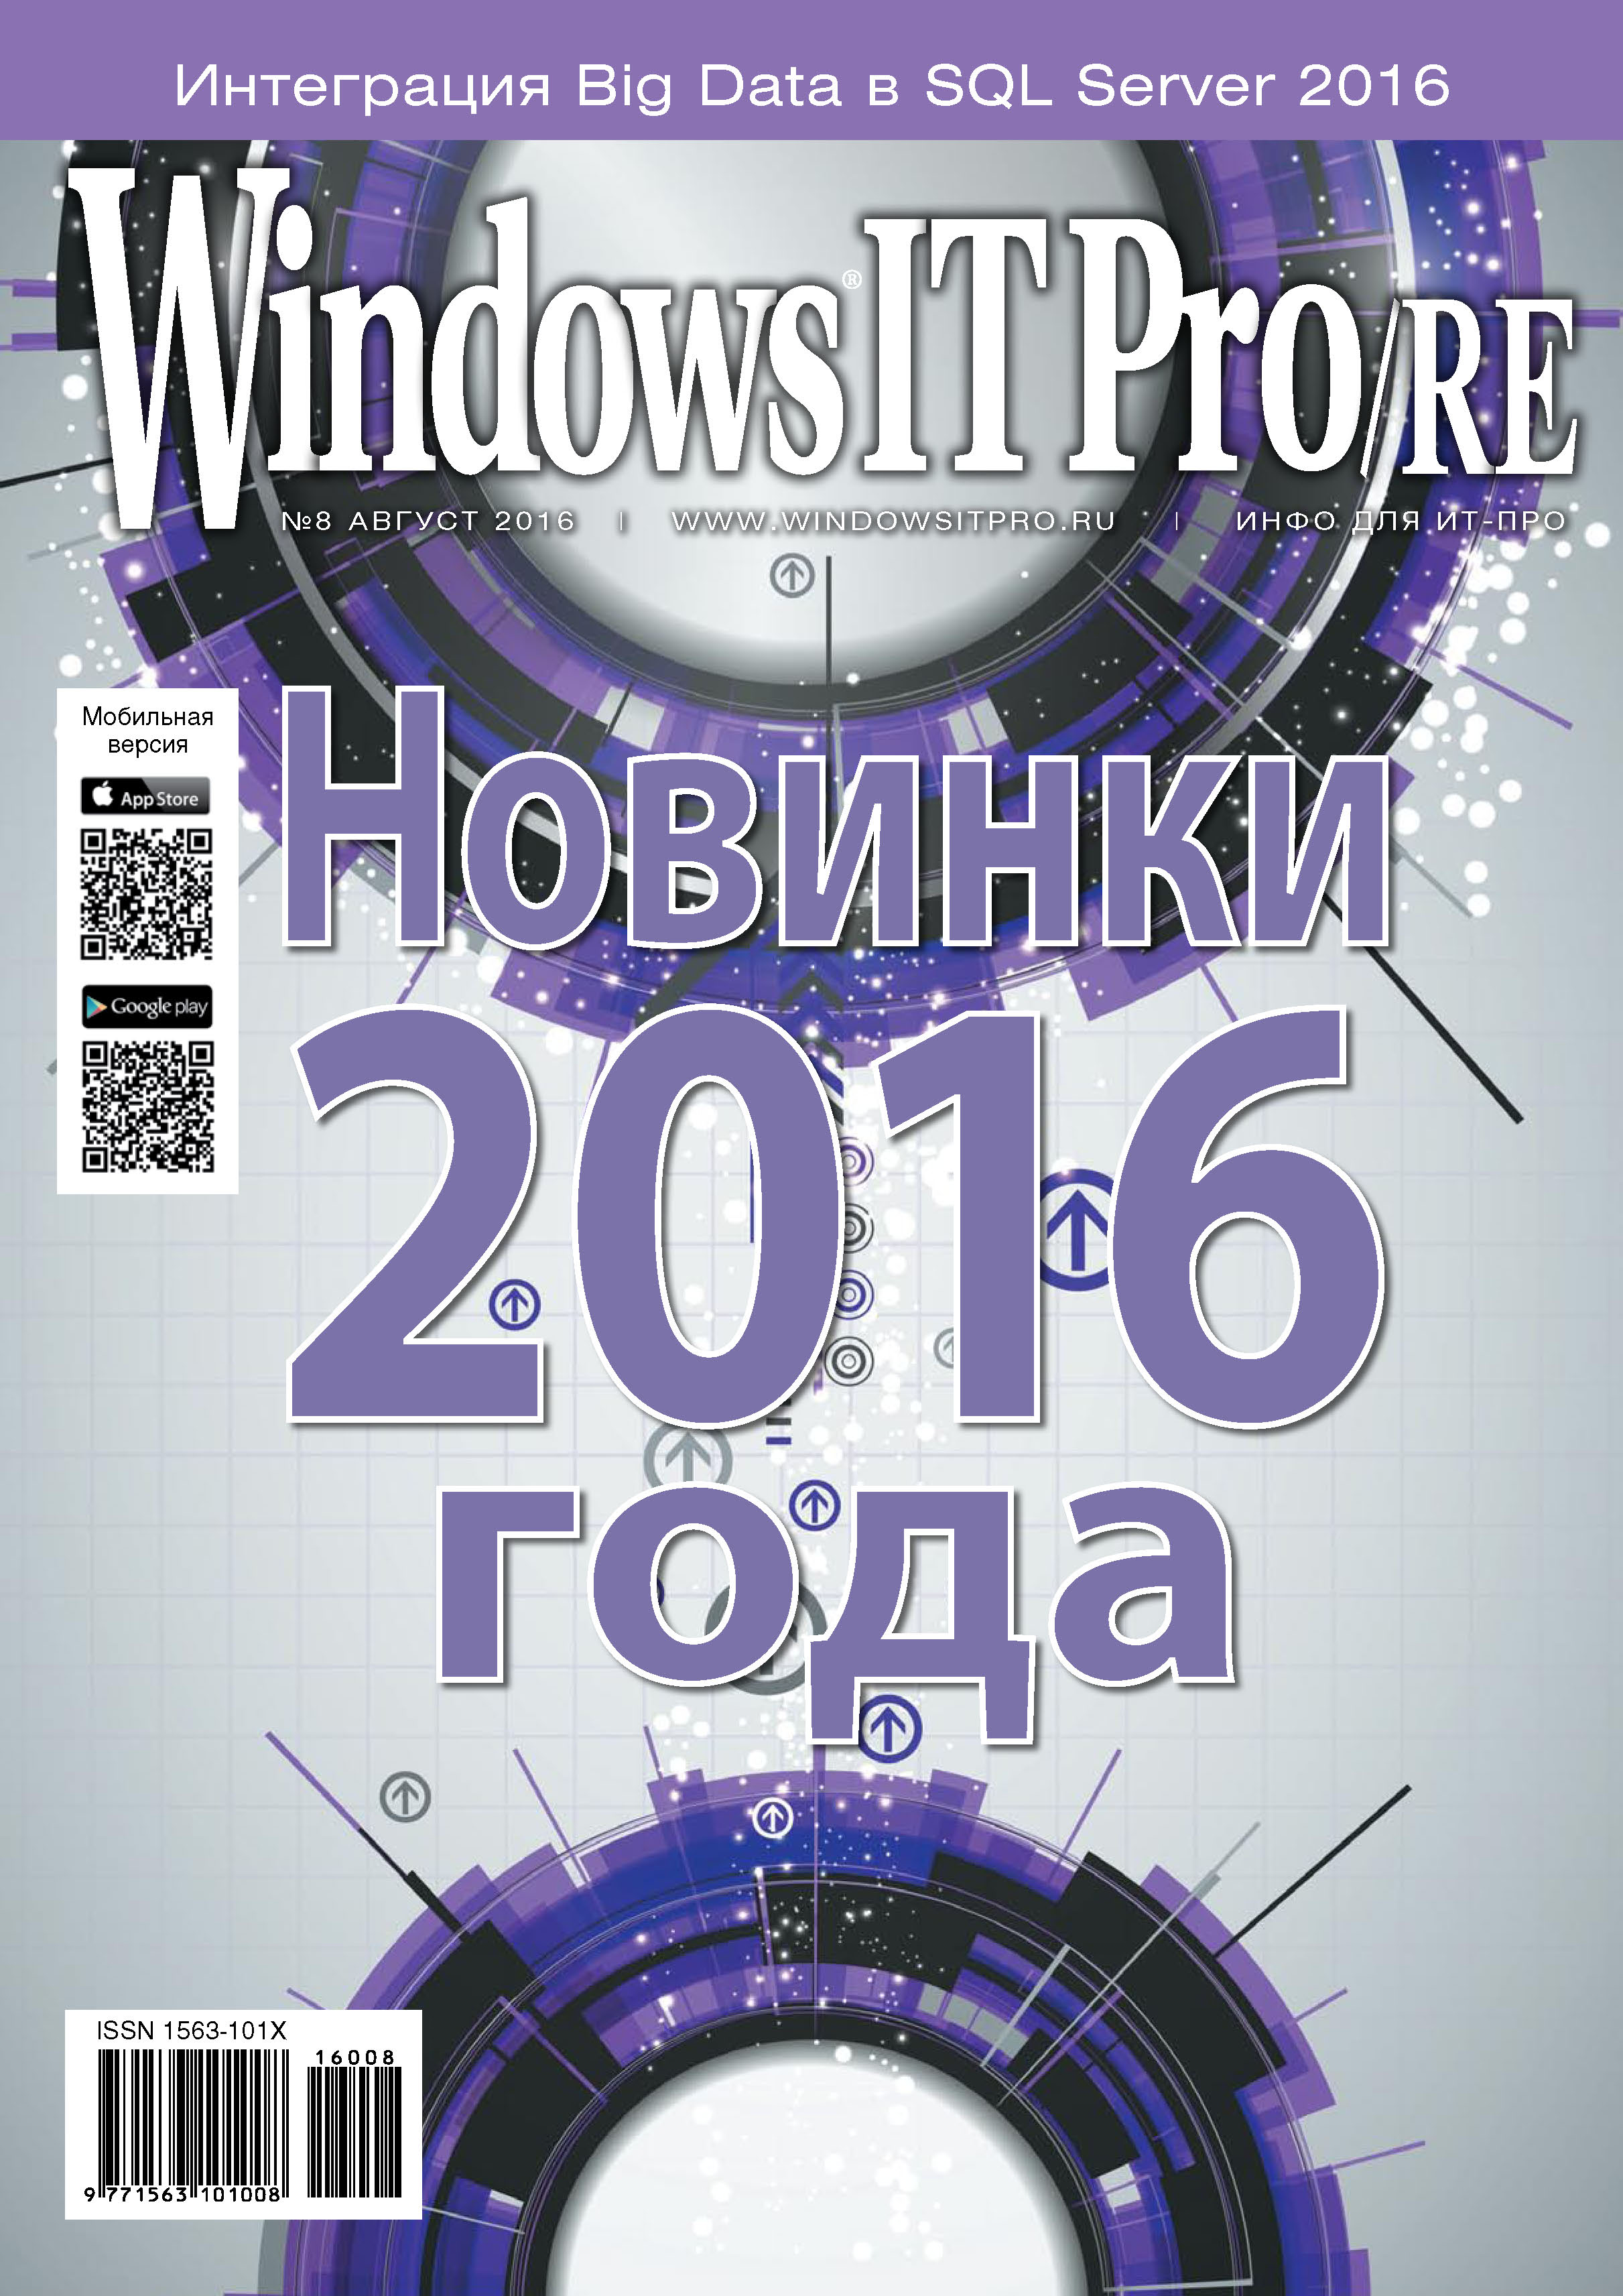 Windows IT Pro/RE№08/2016